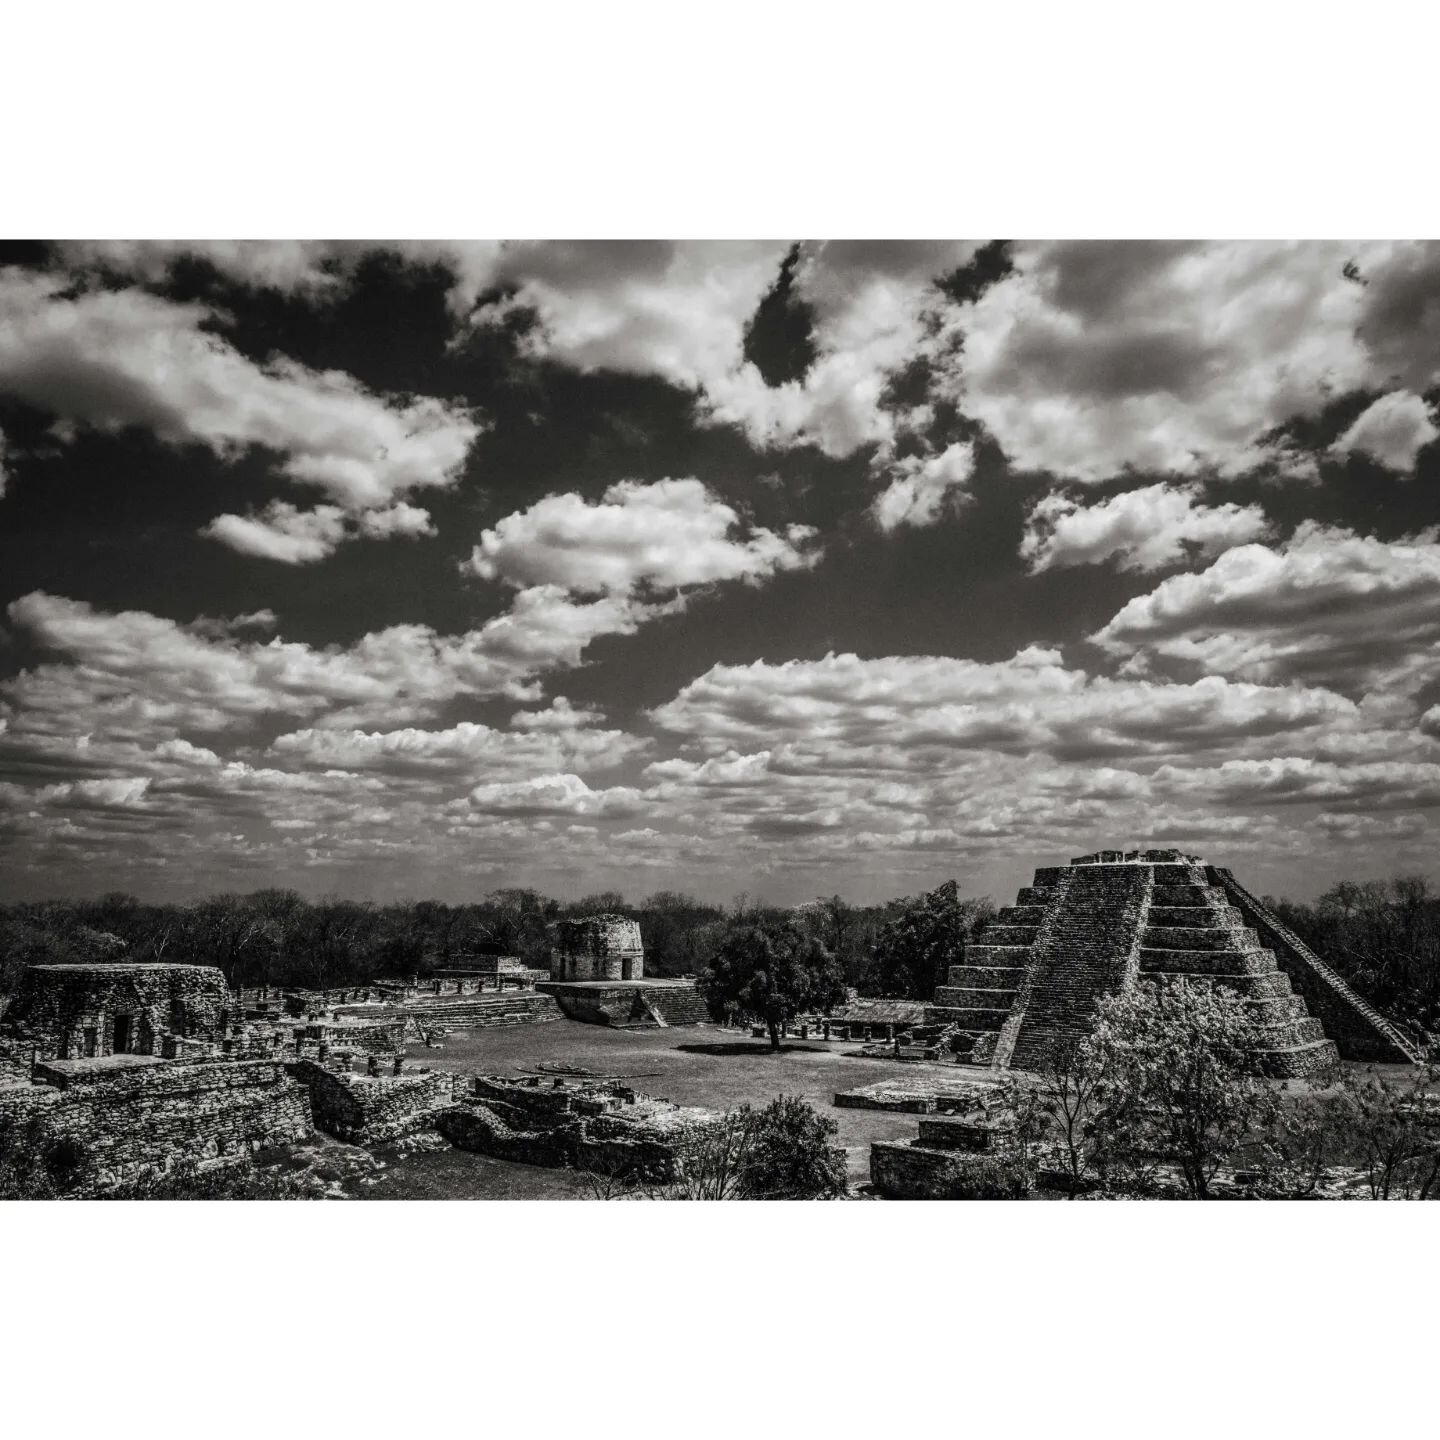 Vista panor&aacute;mica de Mayap&aacute;n.

Se aprecia el Castillo de Kukulc&aacute;n y el observatorio.

#mexico #pyramids #architecture